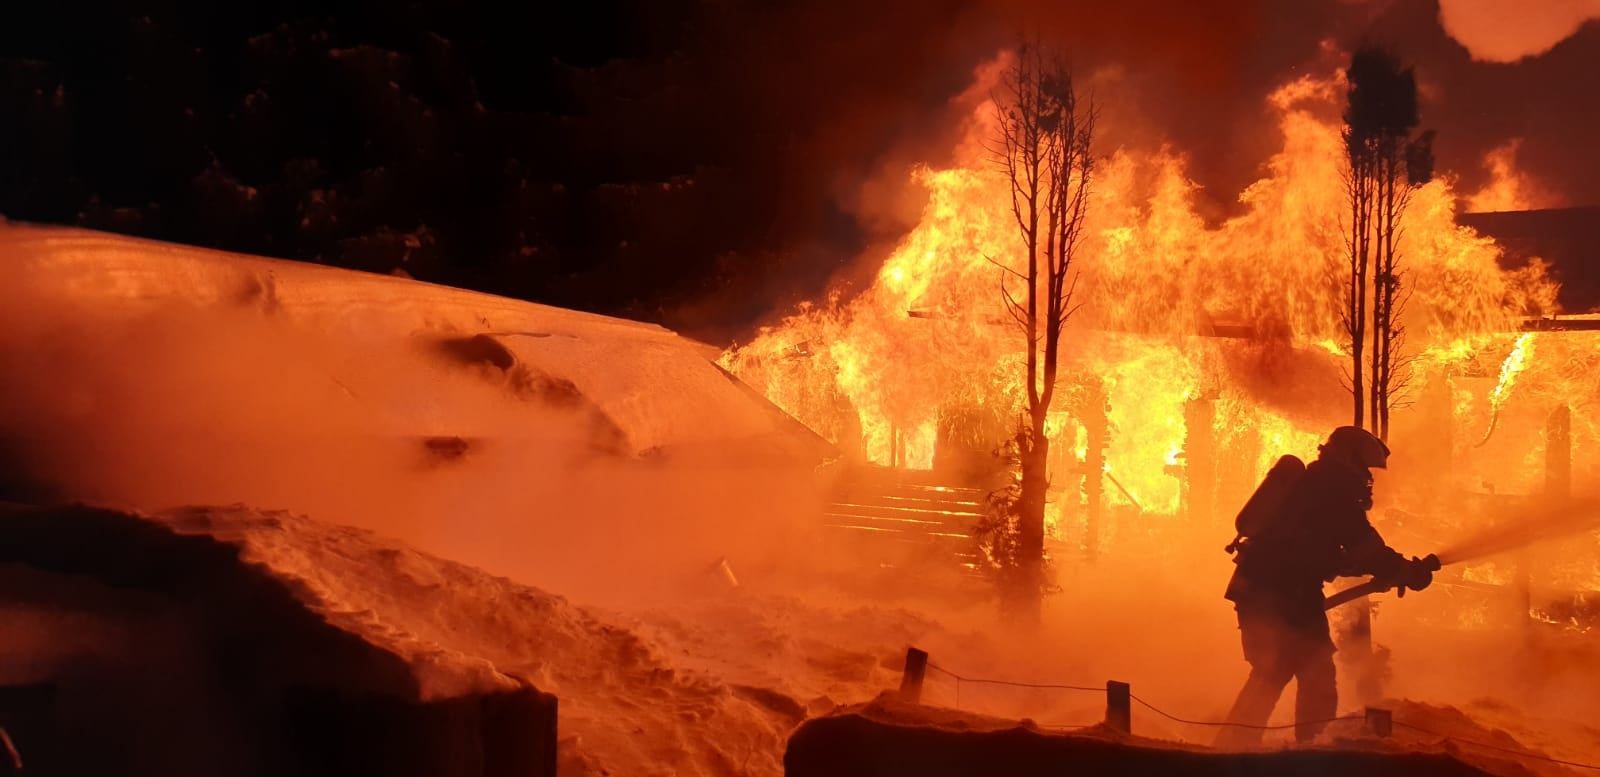 Lesík u Nejdku: Požár chaty likvidovalo 6 jednotek hasičů